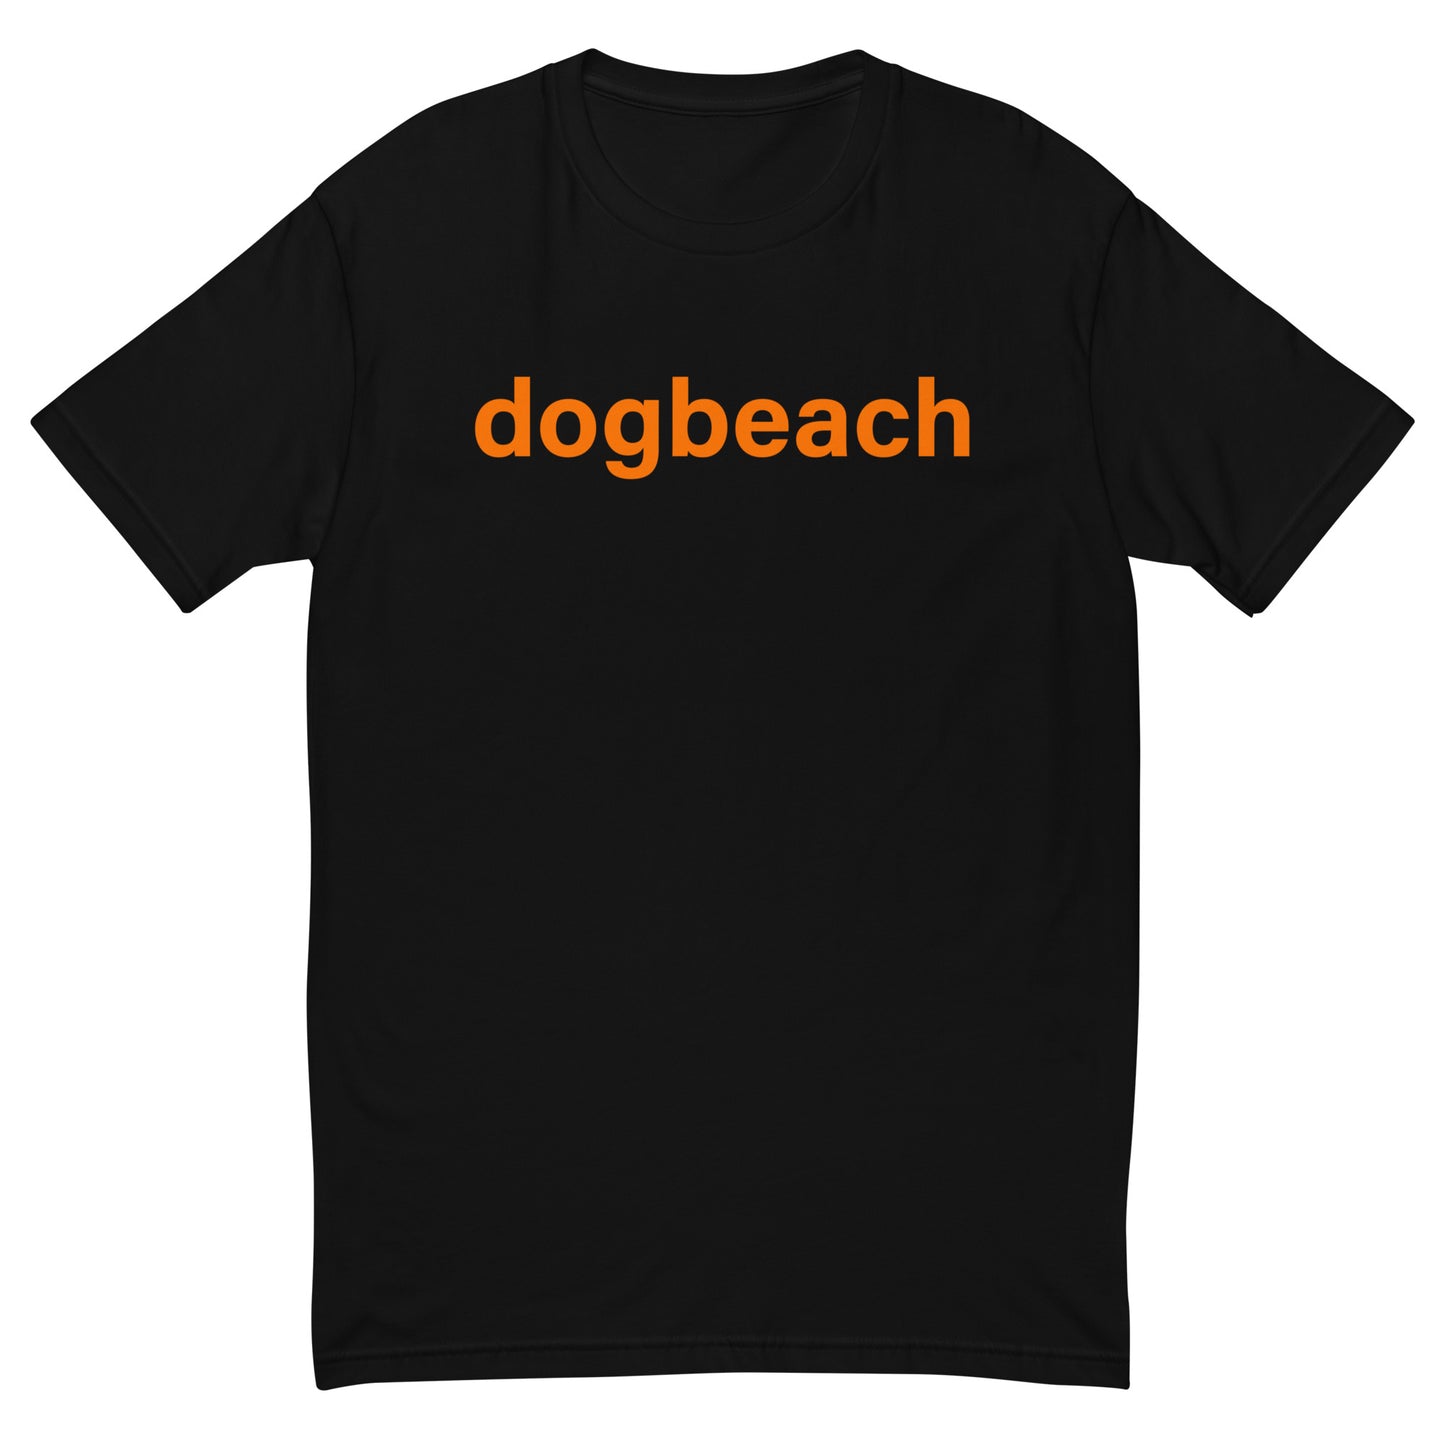 dogbeach plain